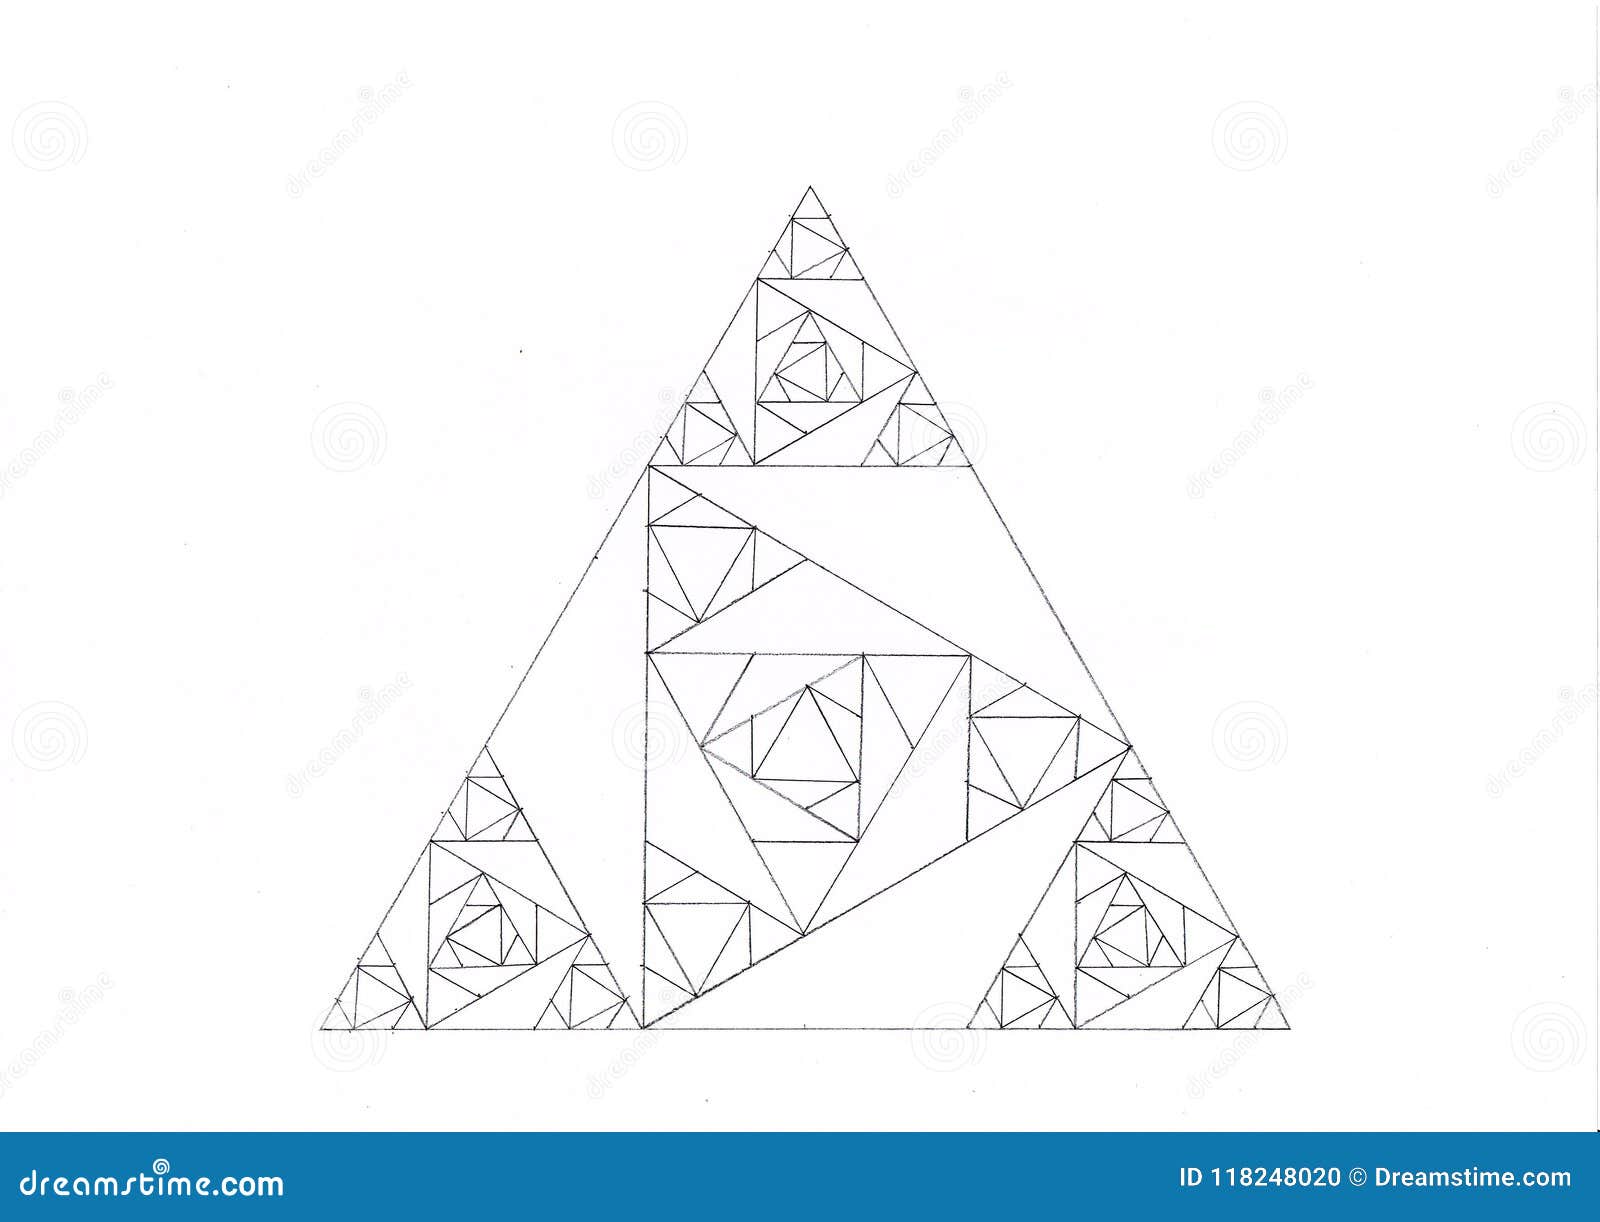 Dibujo De Un Triángulo Hecho De Triángulos Más Pequeños Stock de  ilustración - Ilustración de elipses, elipse: 118248020